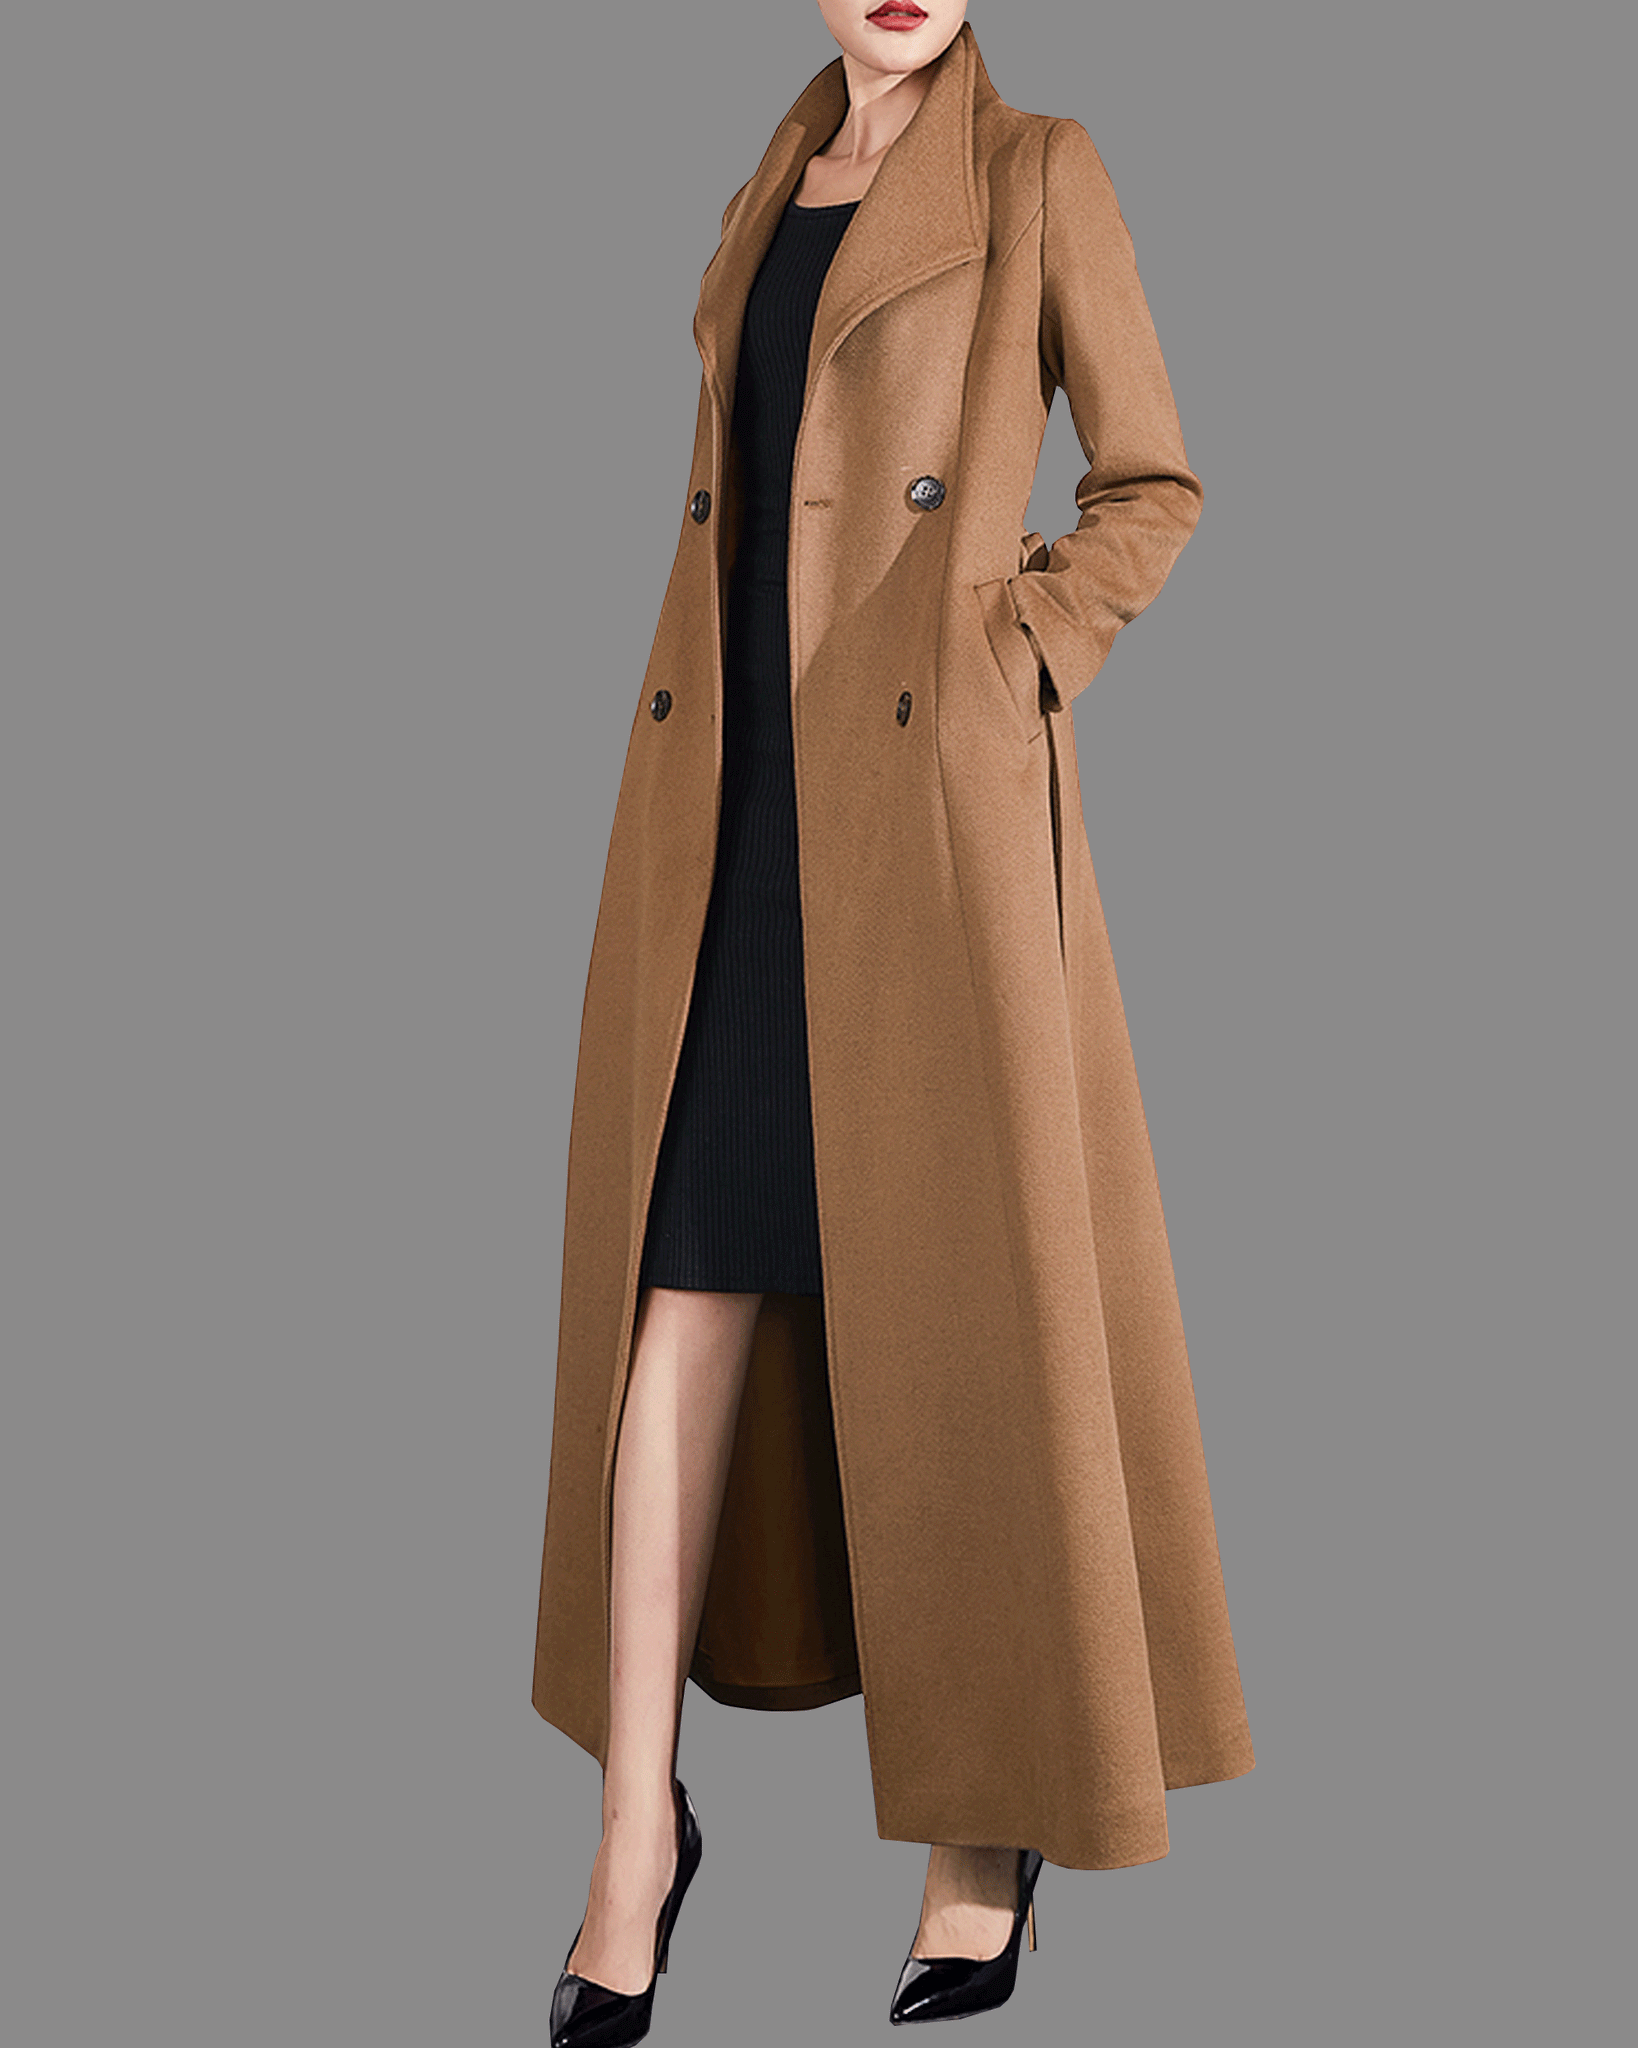 Wool coat women, winter coat, long jacket, double breasted jacket, coa –  lijingshop